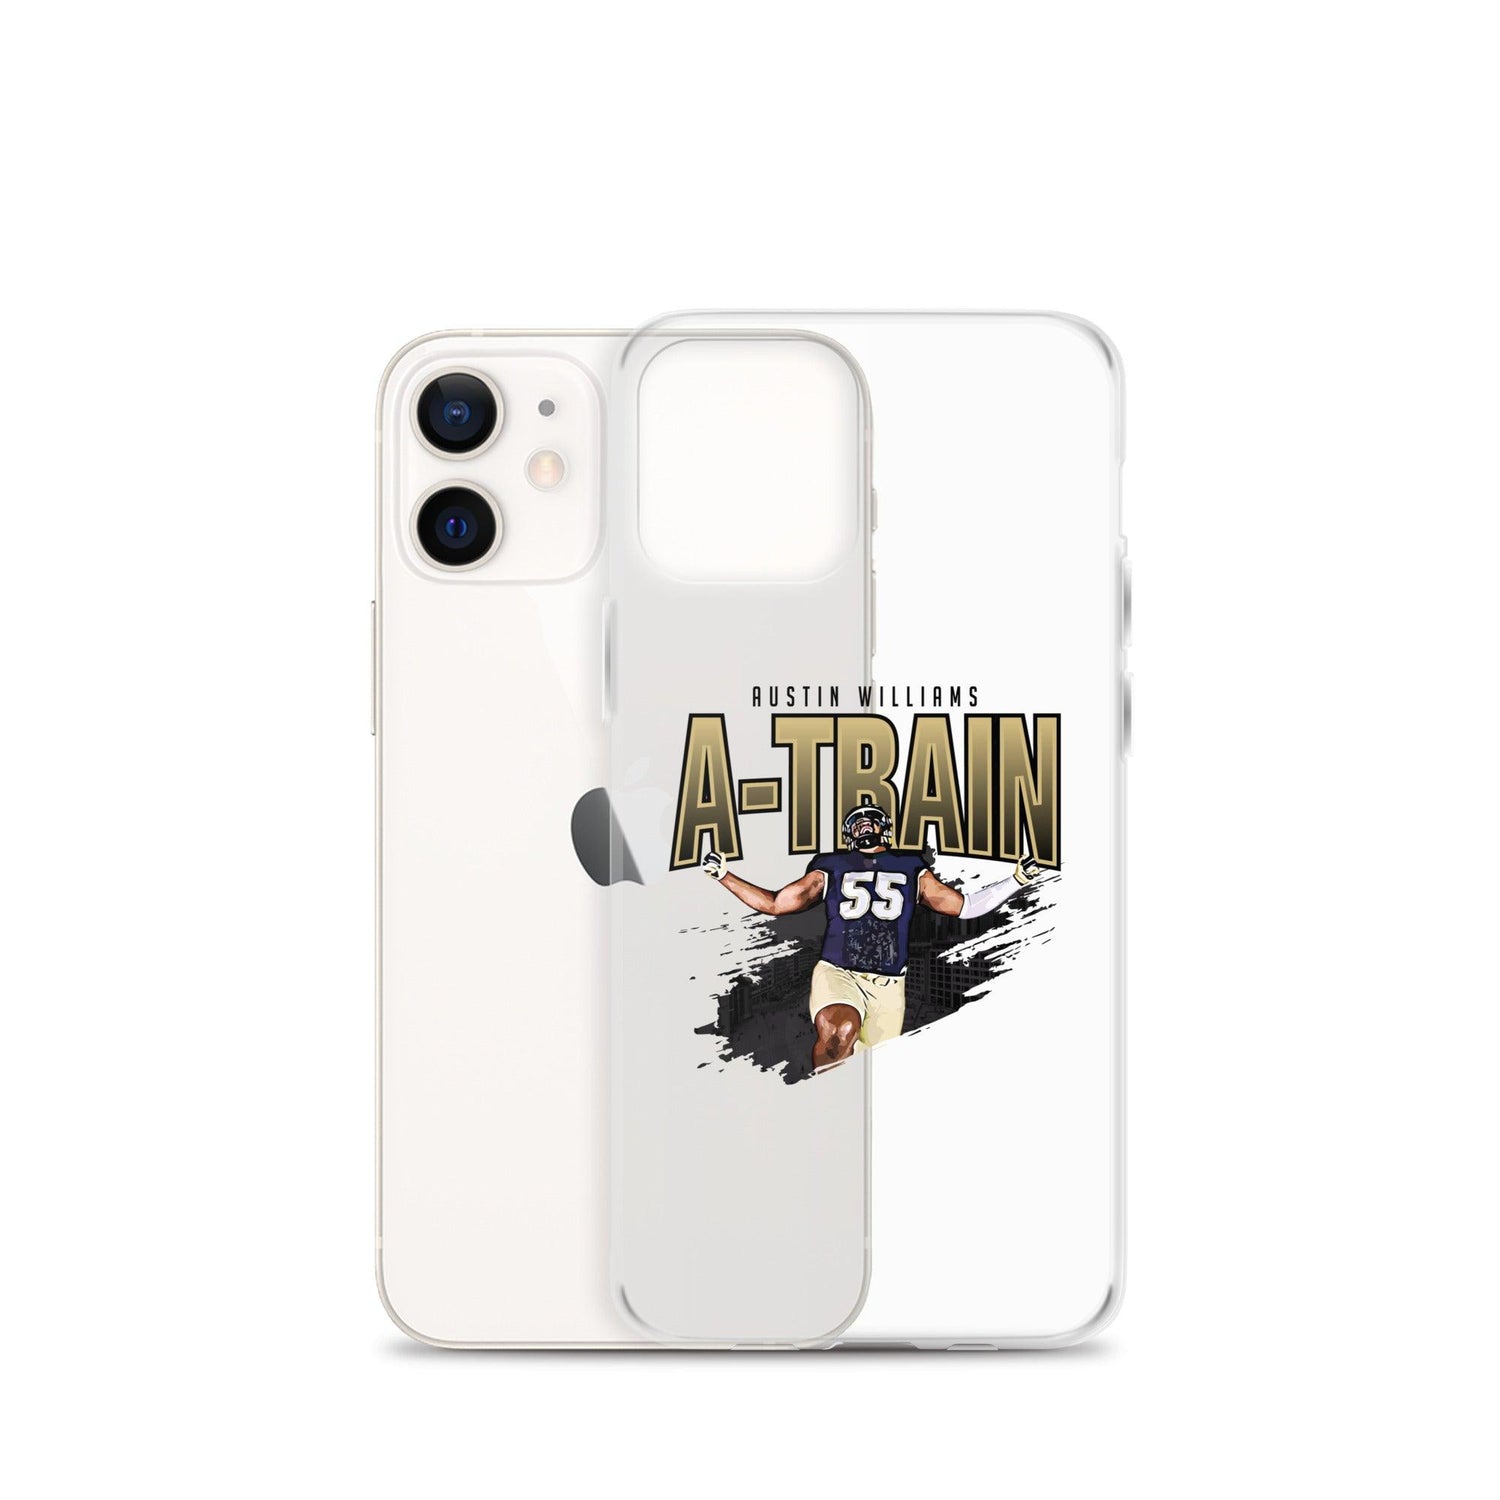 Austin Williams "Celebrate" iPhone Case - Fan Arch